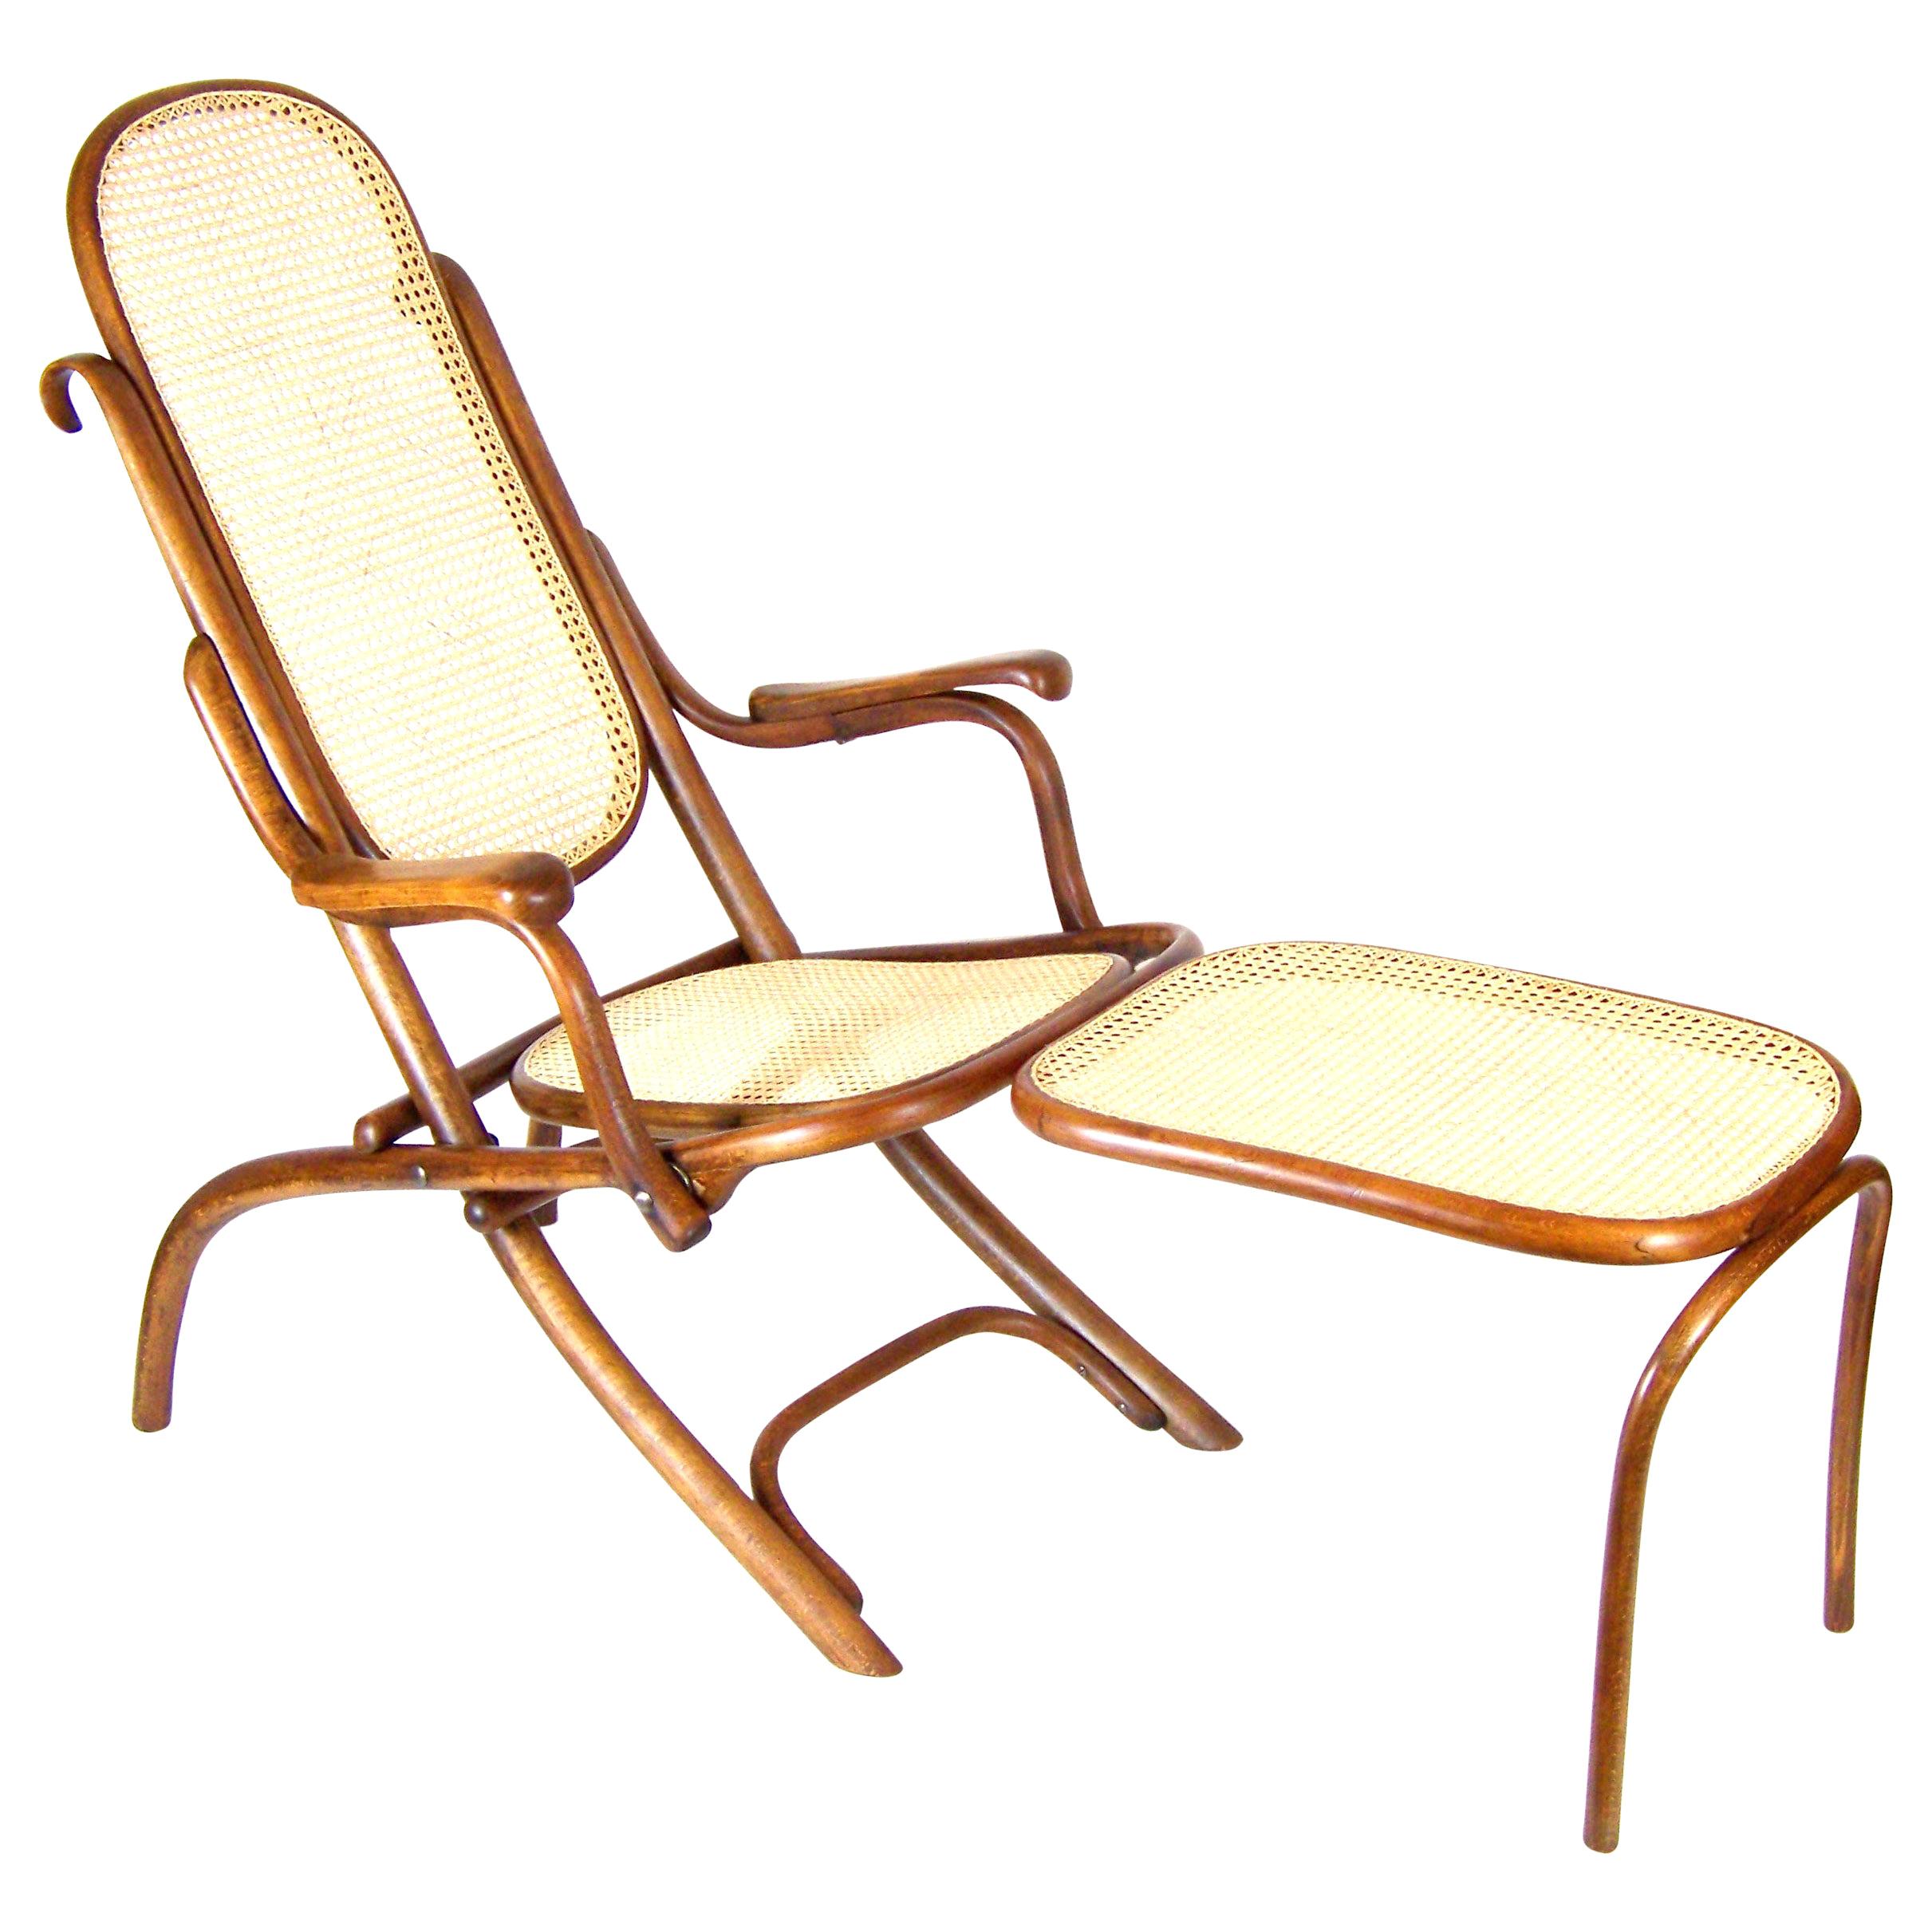 Klappbarer Stuhl Thonet Nr.1 mit Armlehnen und Armlehne, seit 1883